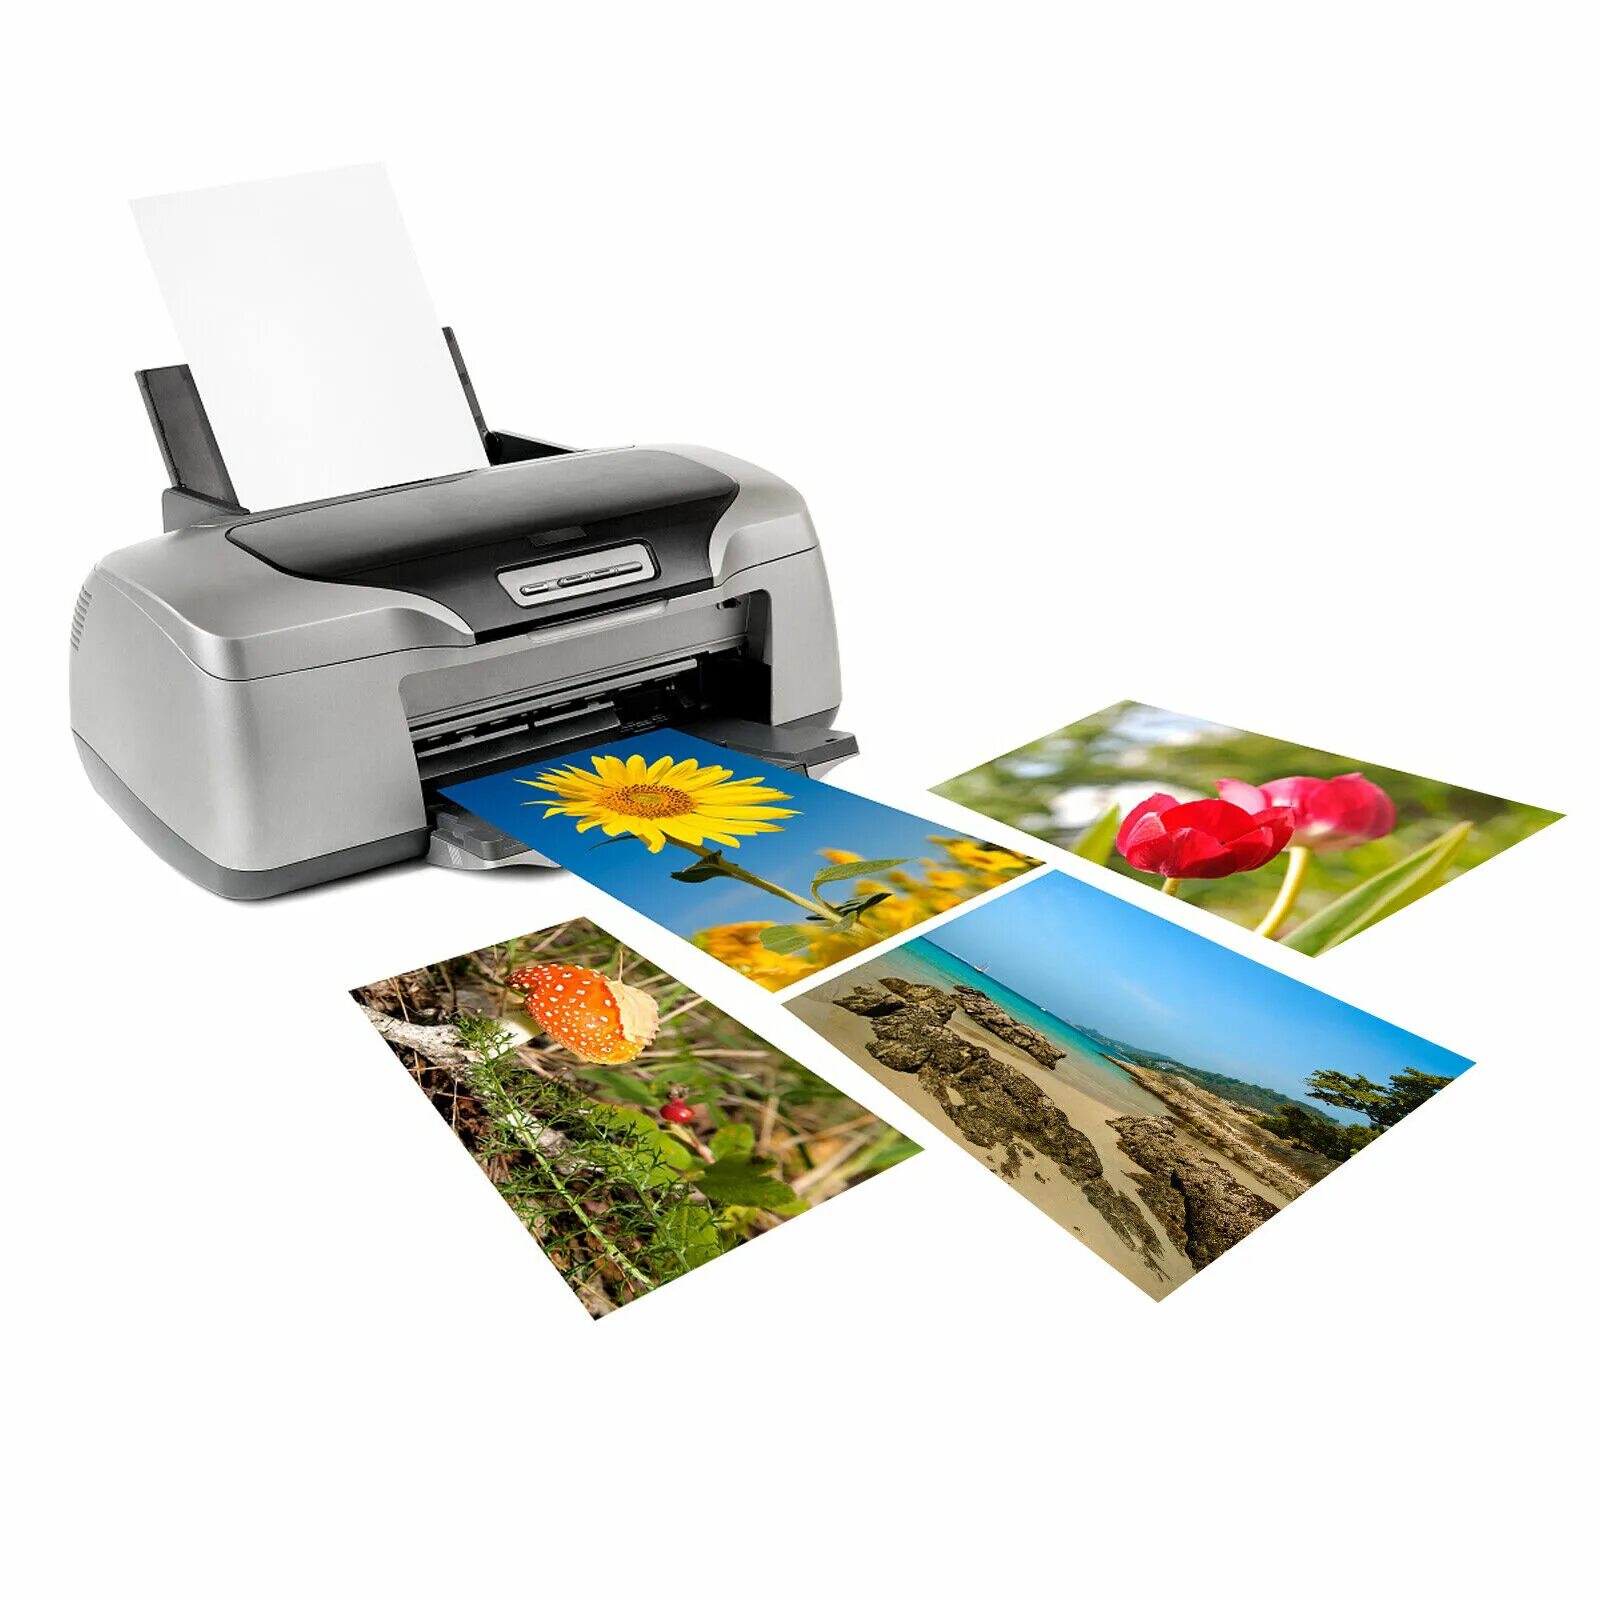 Печать а4 дешево. Inkjet Printer струйный плоттер. Canon PIXMA g3420. Цветная печать на принтере. Бумага для печати на принтере.